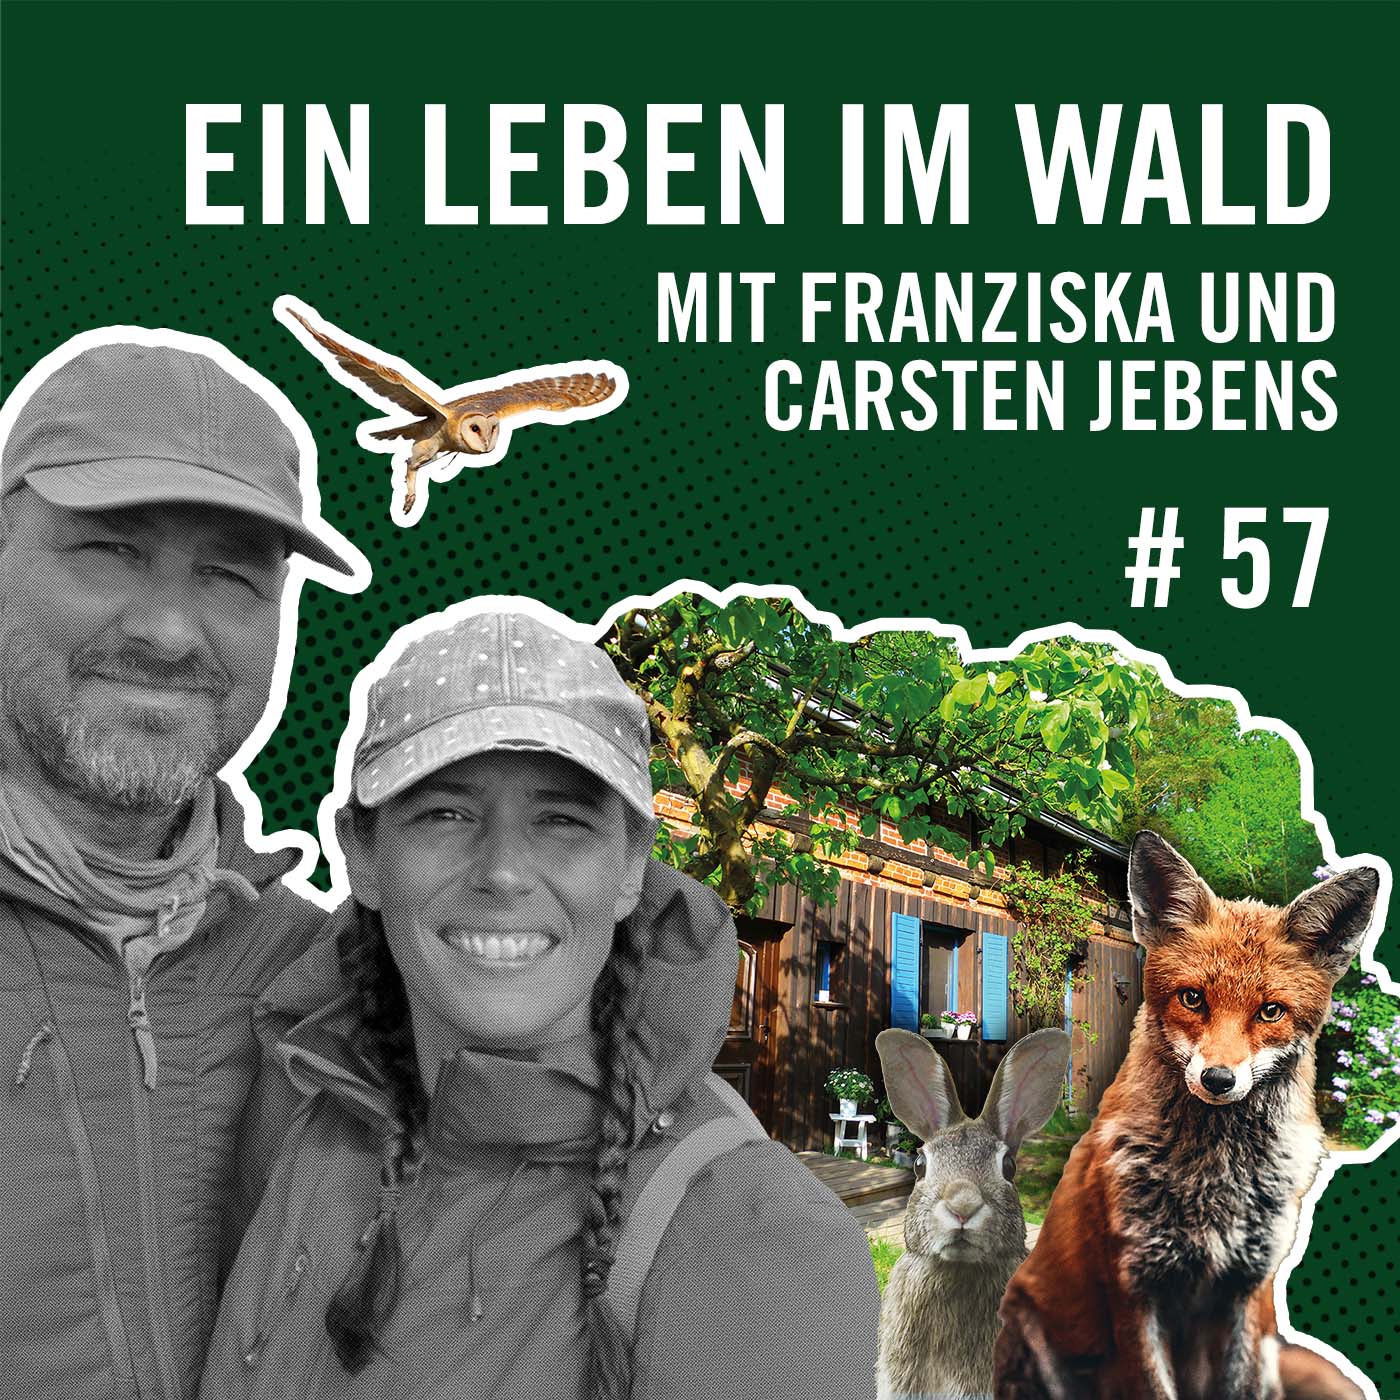 Ein Leben im Wald mit Franziska und Carsten Jebens #57